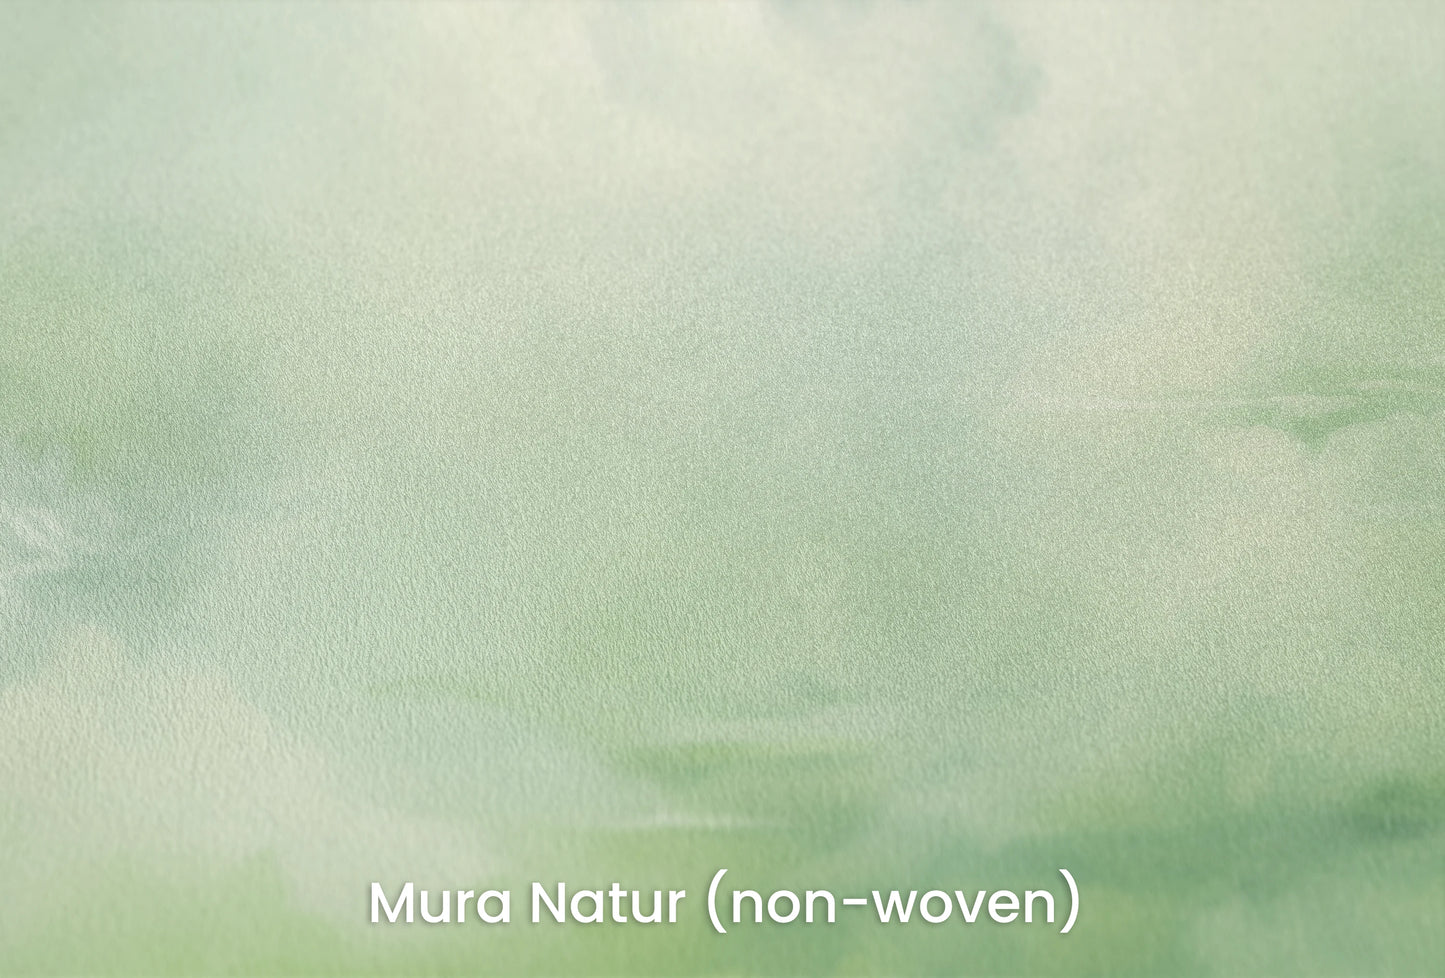 Zbliżenie na artystyczną fototapetę o nazwie Storm Herald na podłożu Mura Natur (non-woven) - naturalne i ekologiczne podłoże.